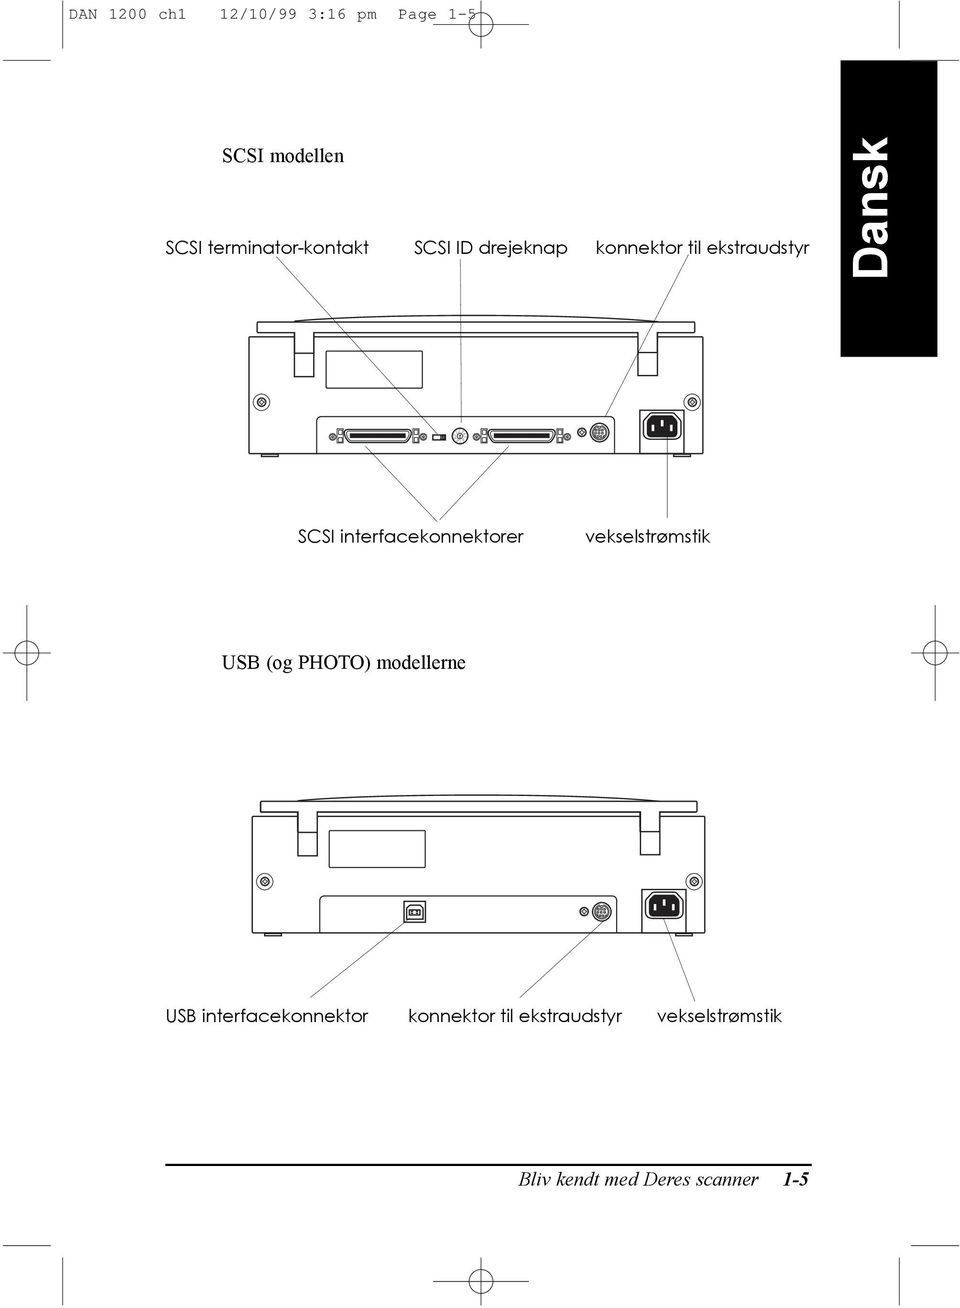 interfacekonnektorer vekselstr mstik USB (og PHOTO) modellerne USB